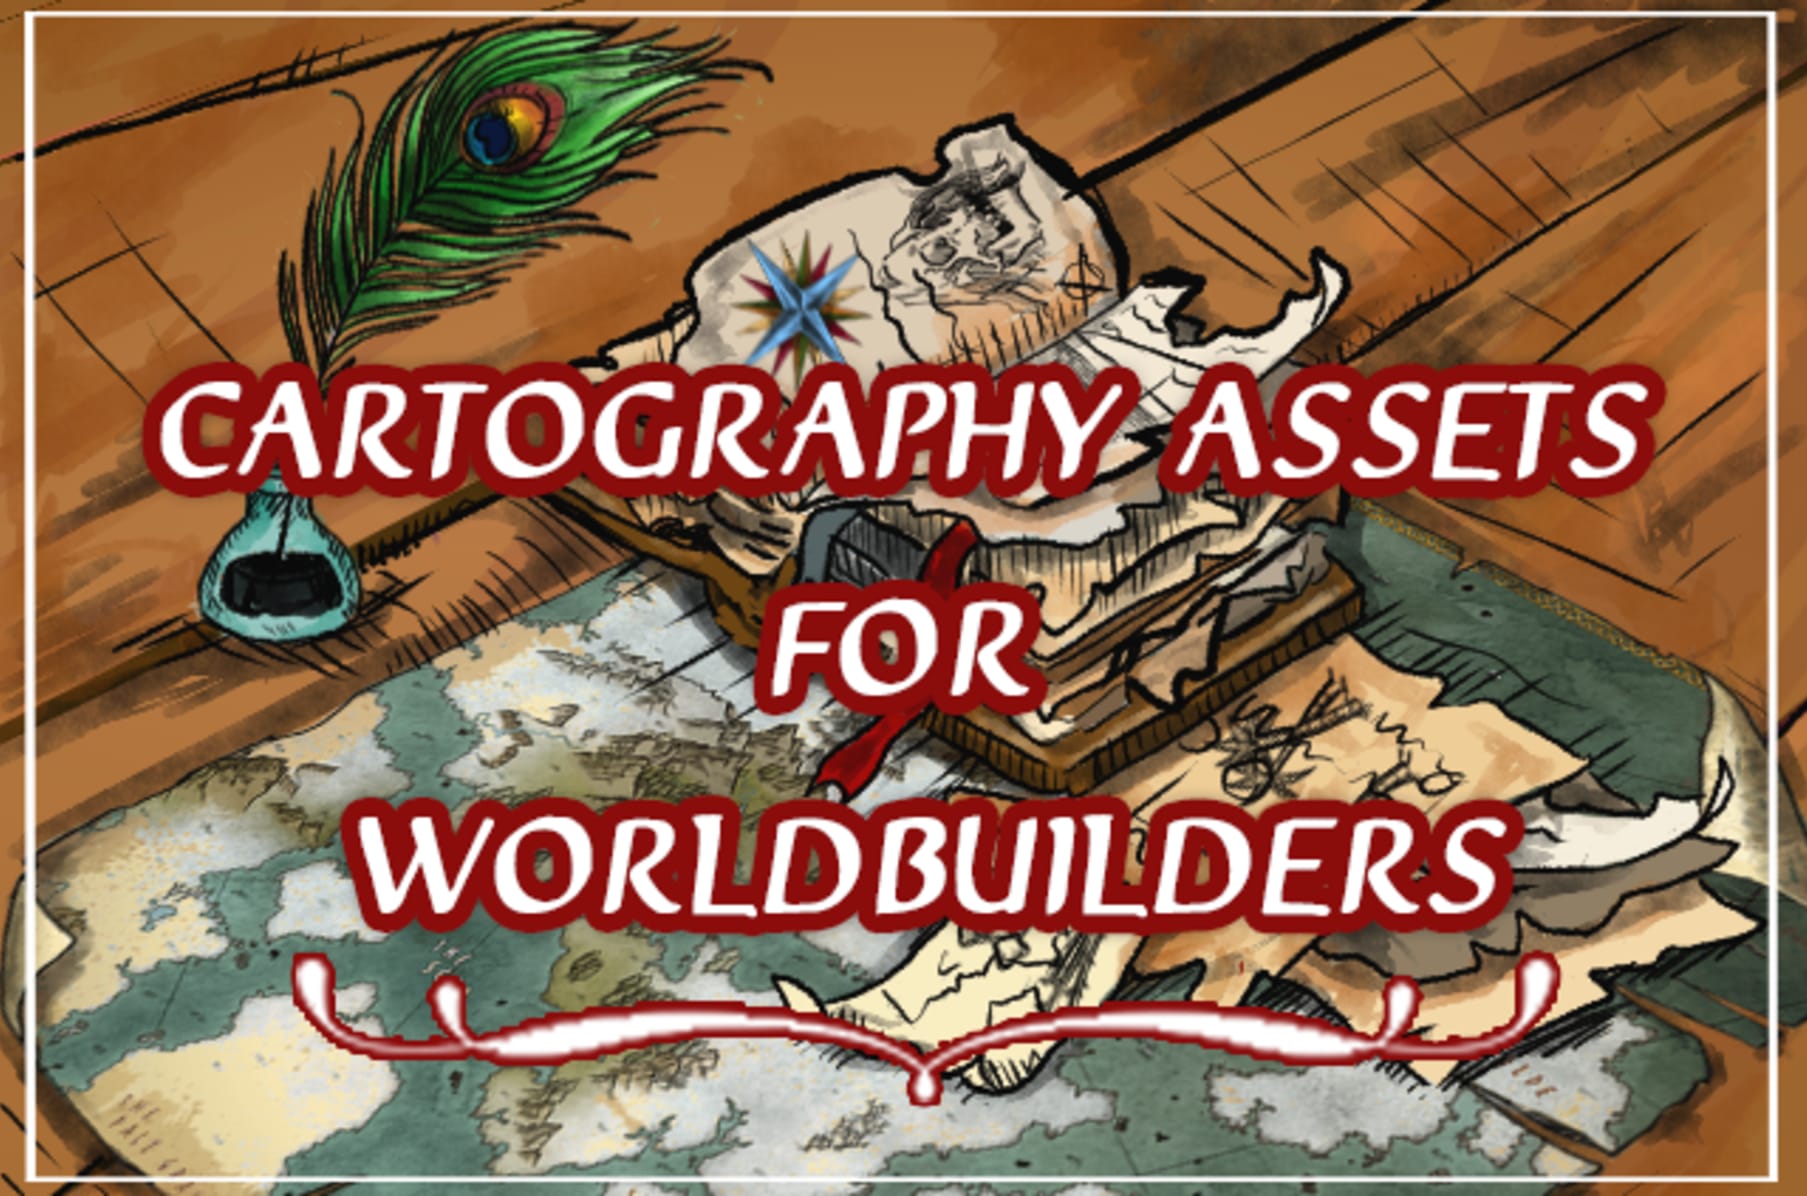 Assets - CartographyAssets